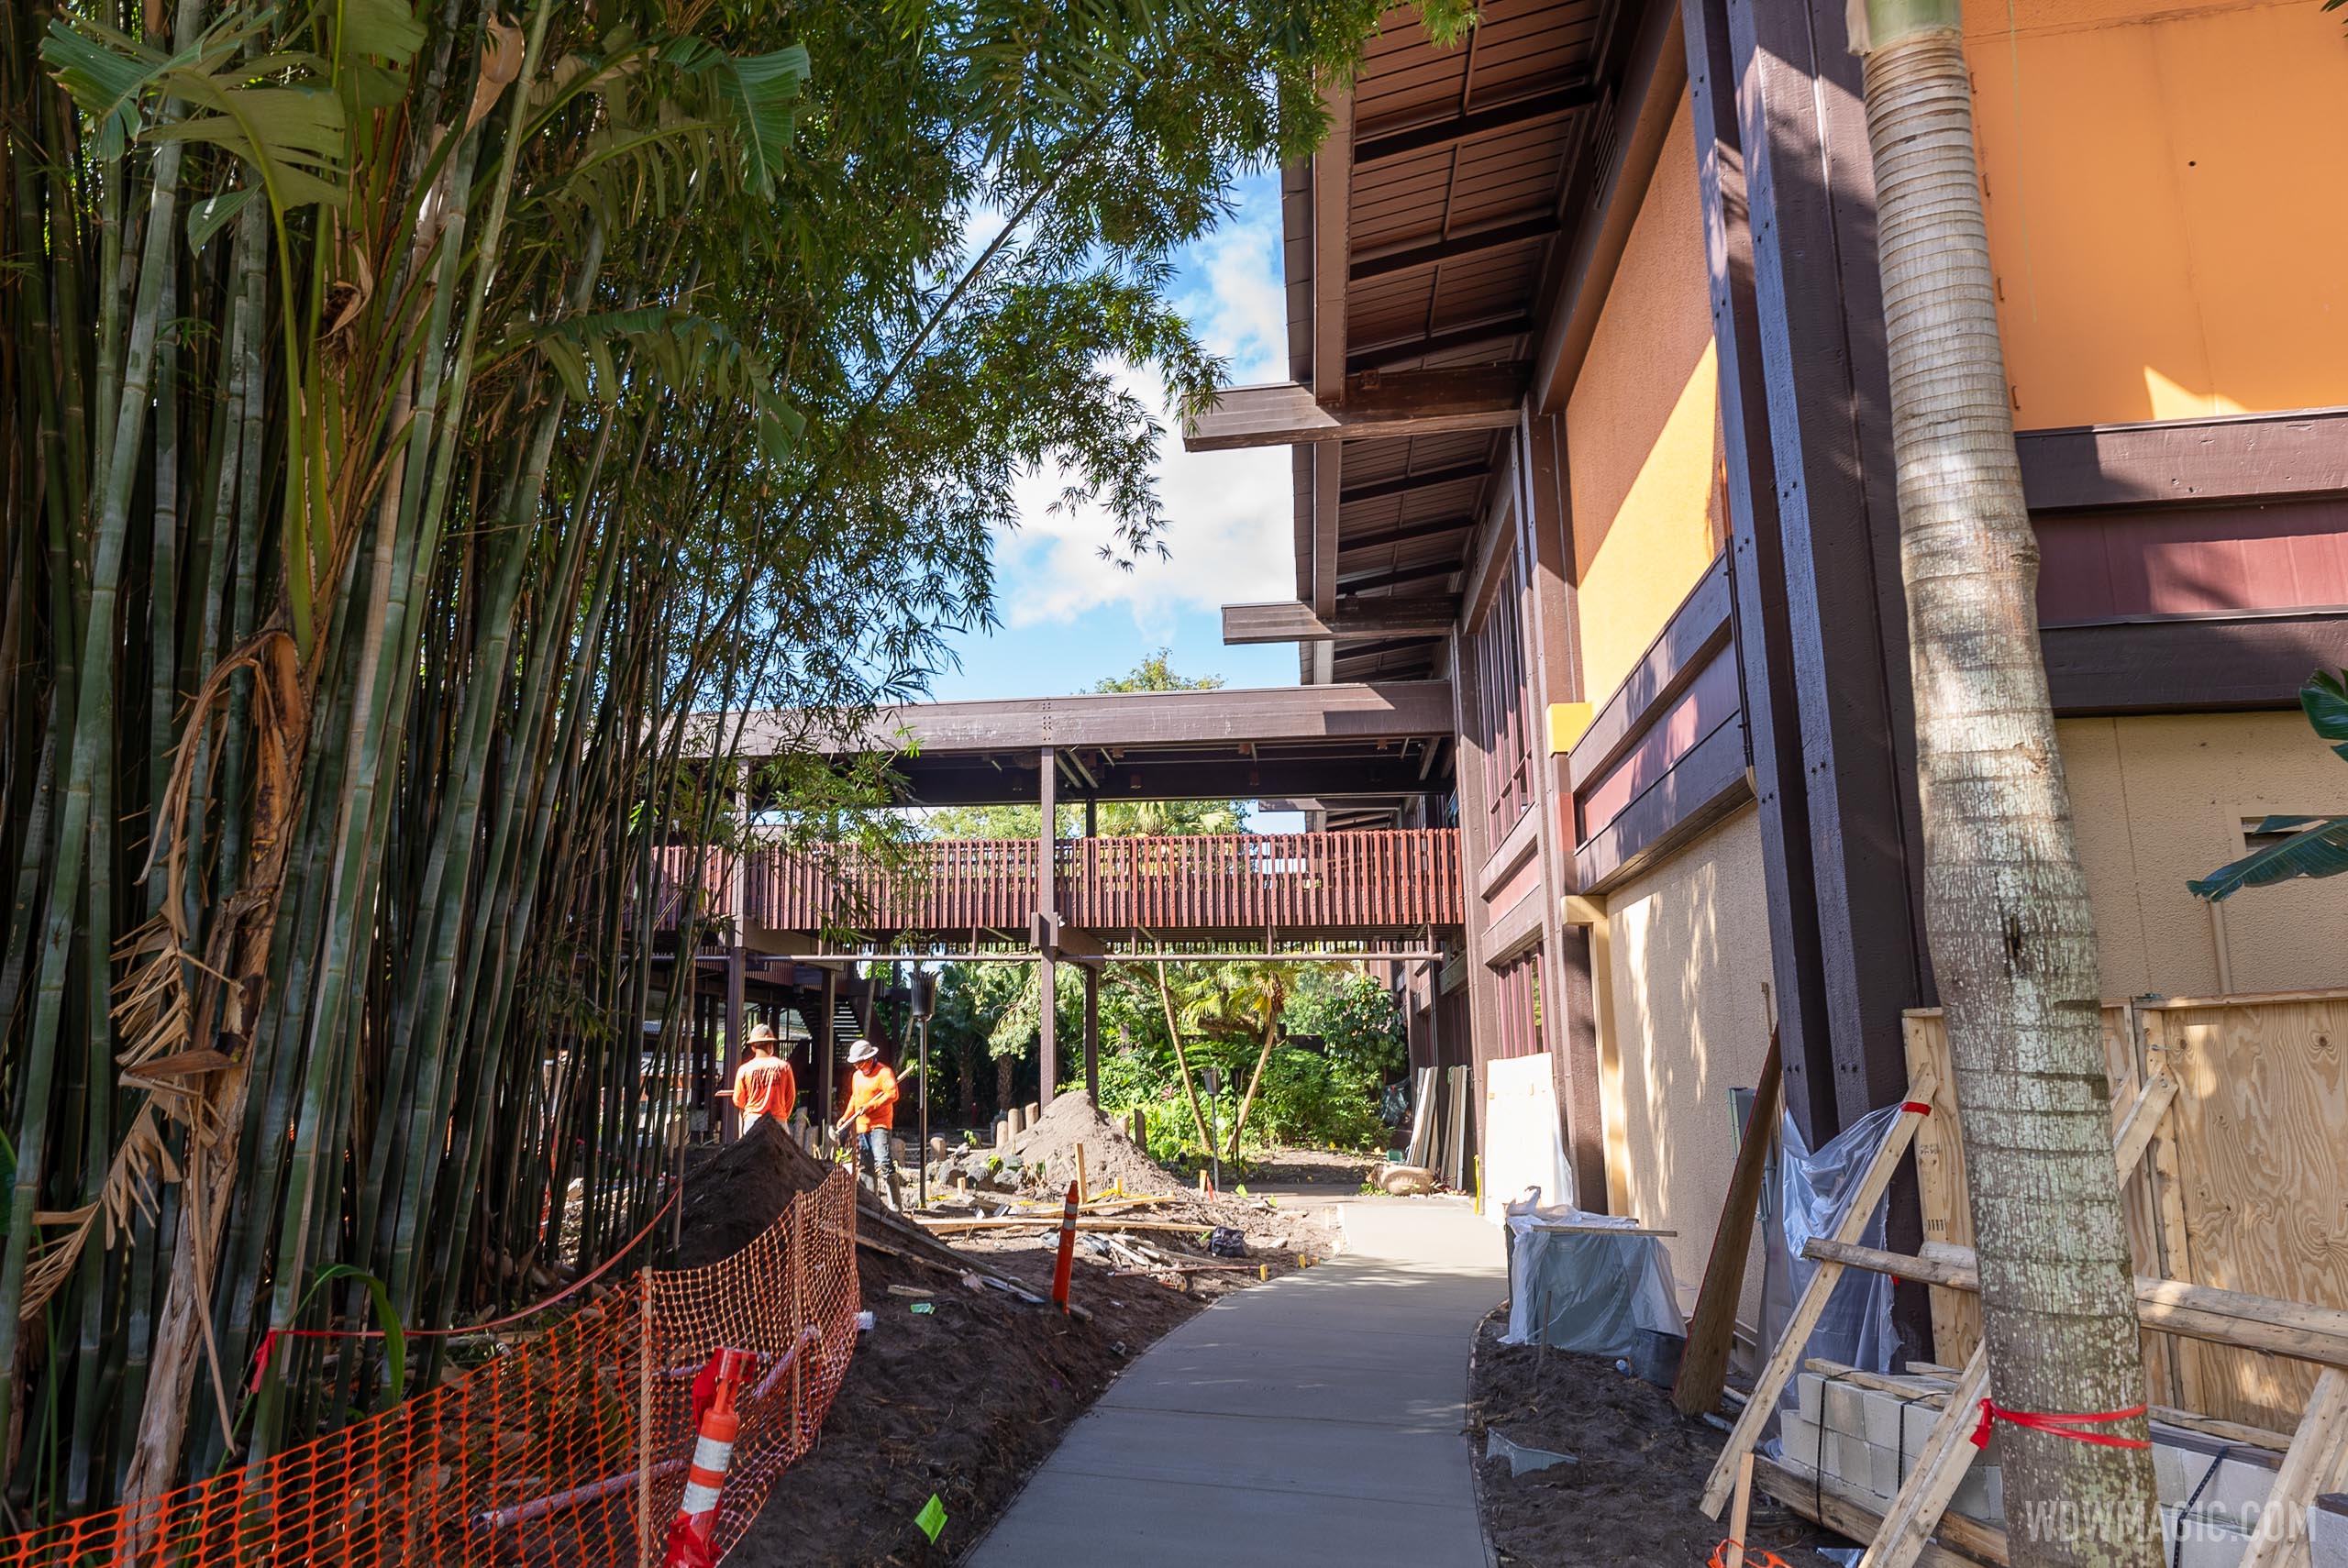 Latest refurbishment progress at Disney’s Polynesian Resort